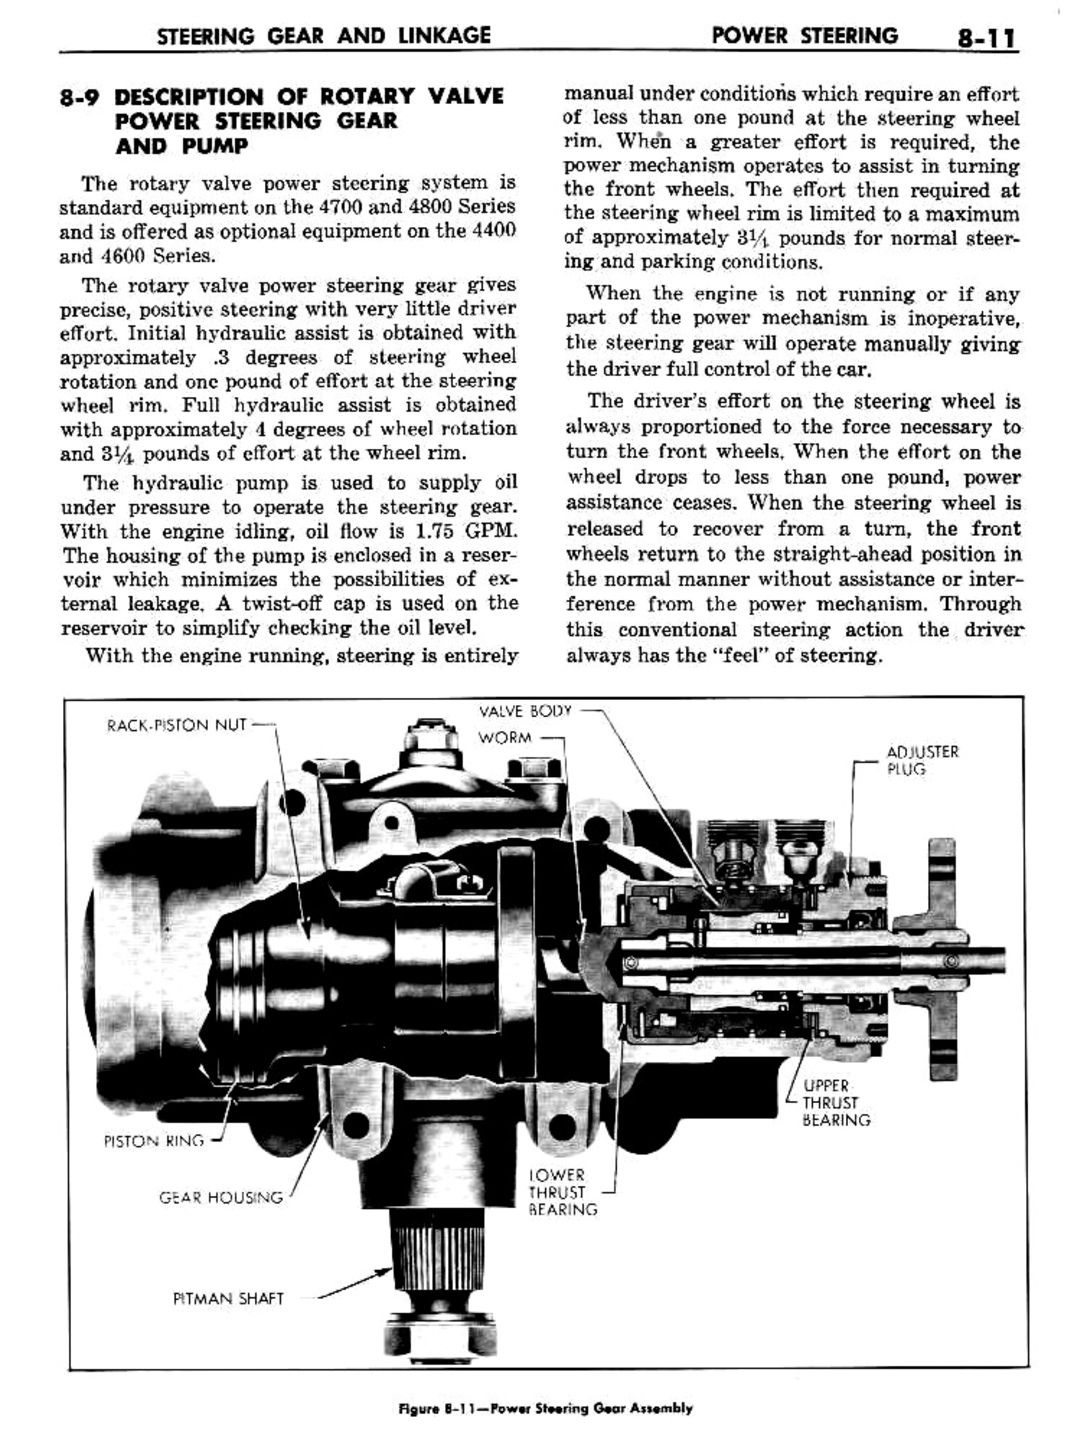 n_09 1960 Buick Shop Manual - Steering-011-011.jpg